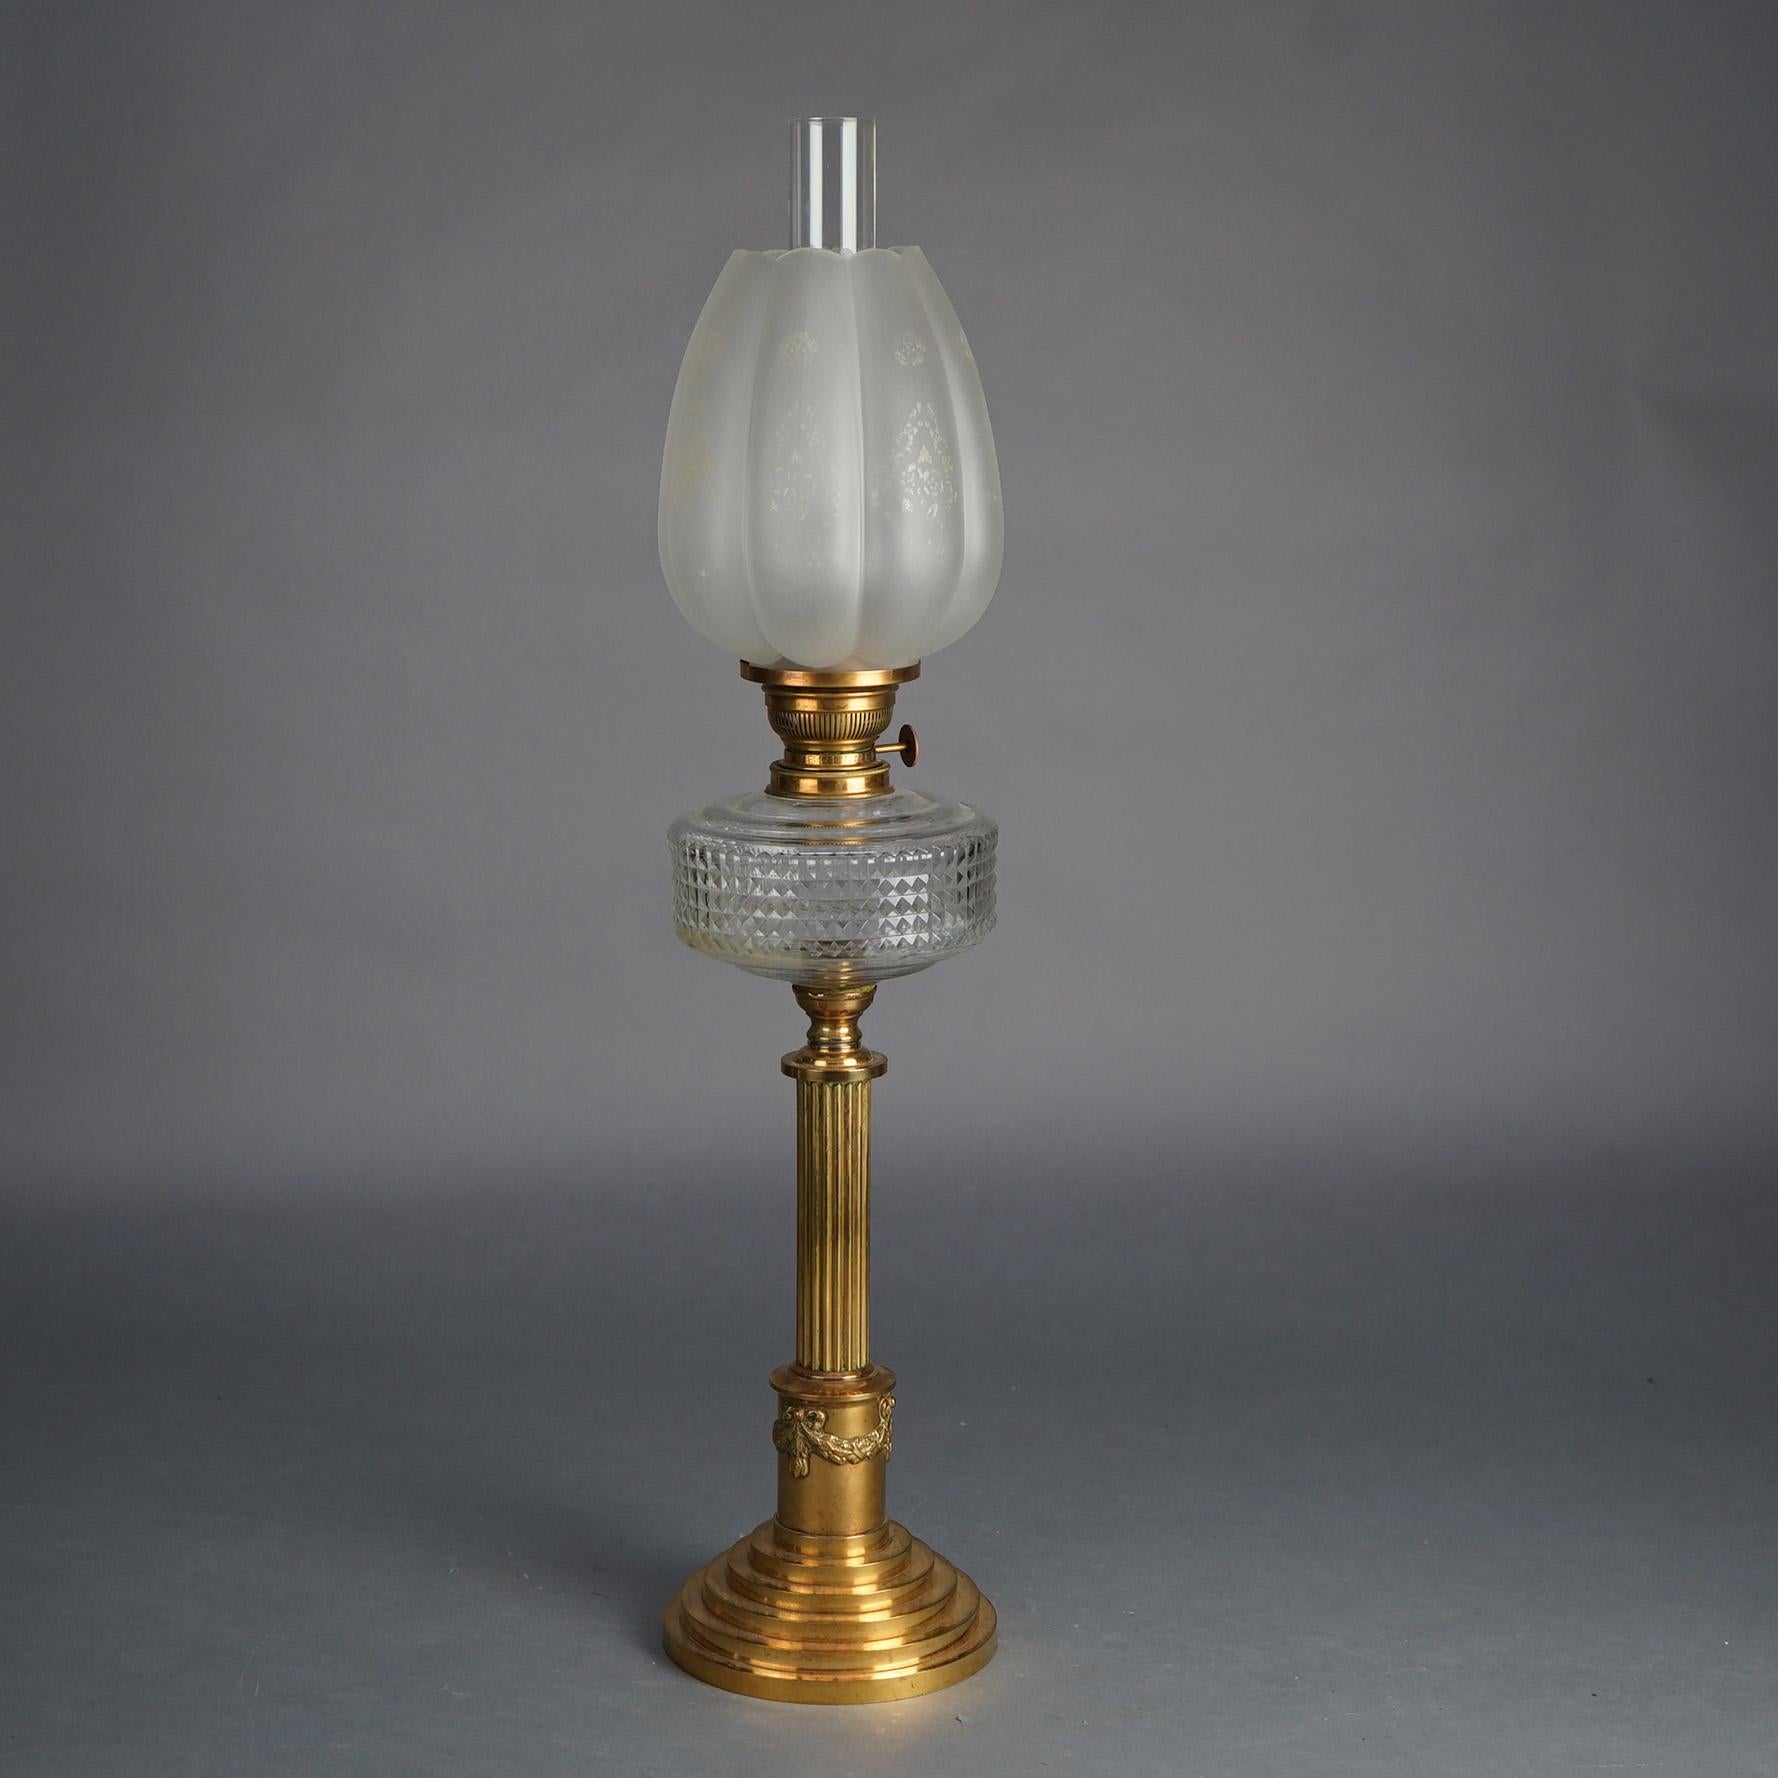 Antike neoklassizistische Öllampe aus Bronze mit kanneliertem und ausgestelltem Sockel, gepresstem Glasfont und floralem Riffelglasschirm C1890

Maße: 30''H x 6,75''B x 6,75''T